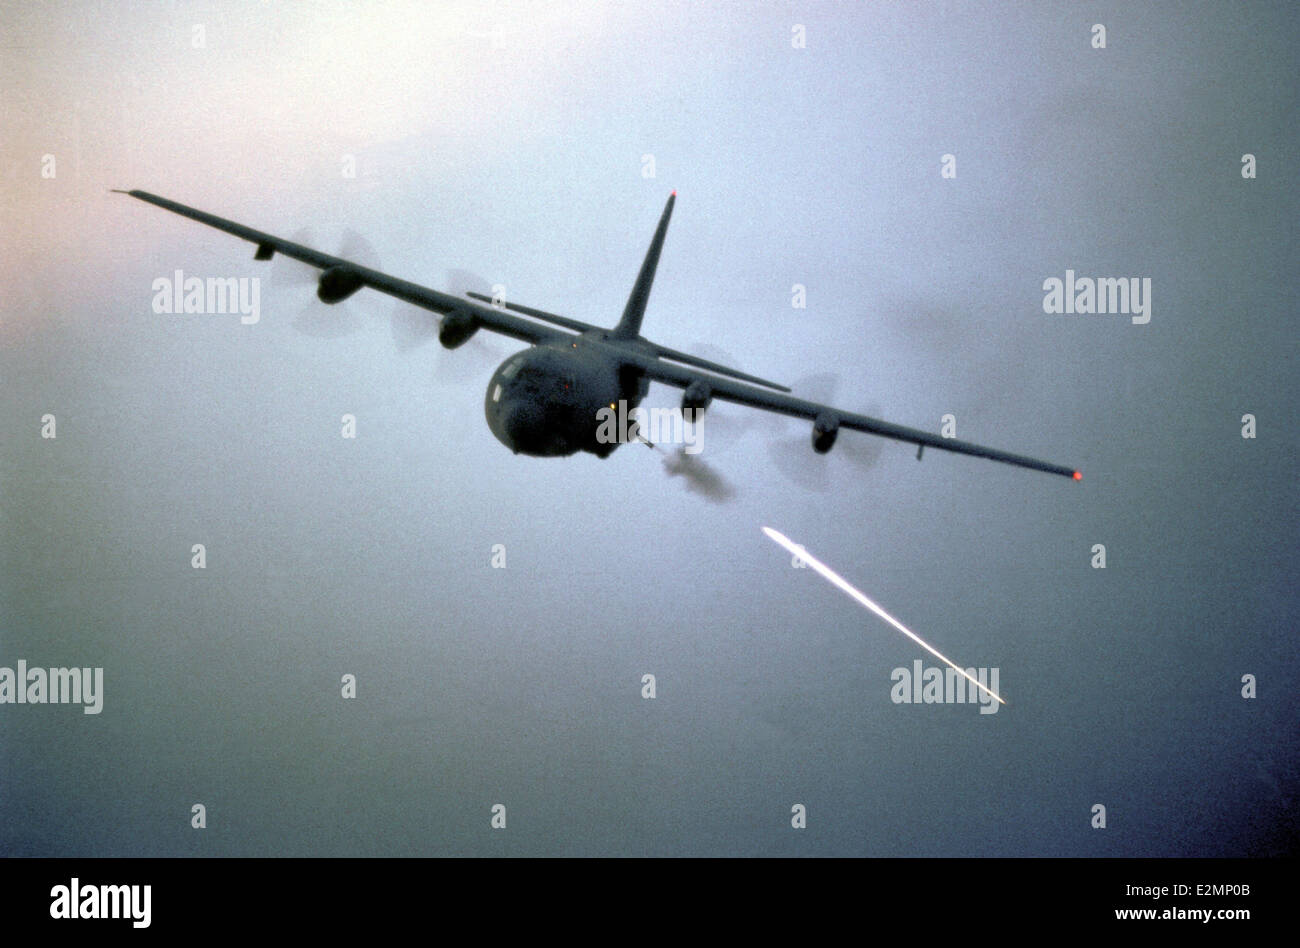 AC-130 Hercules gunship aircraft during target practice Stock Photo